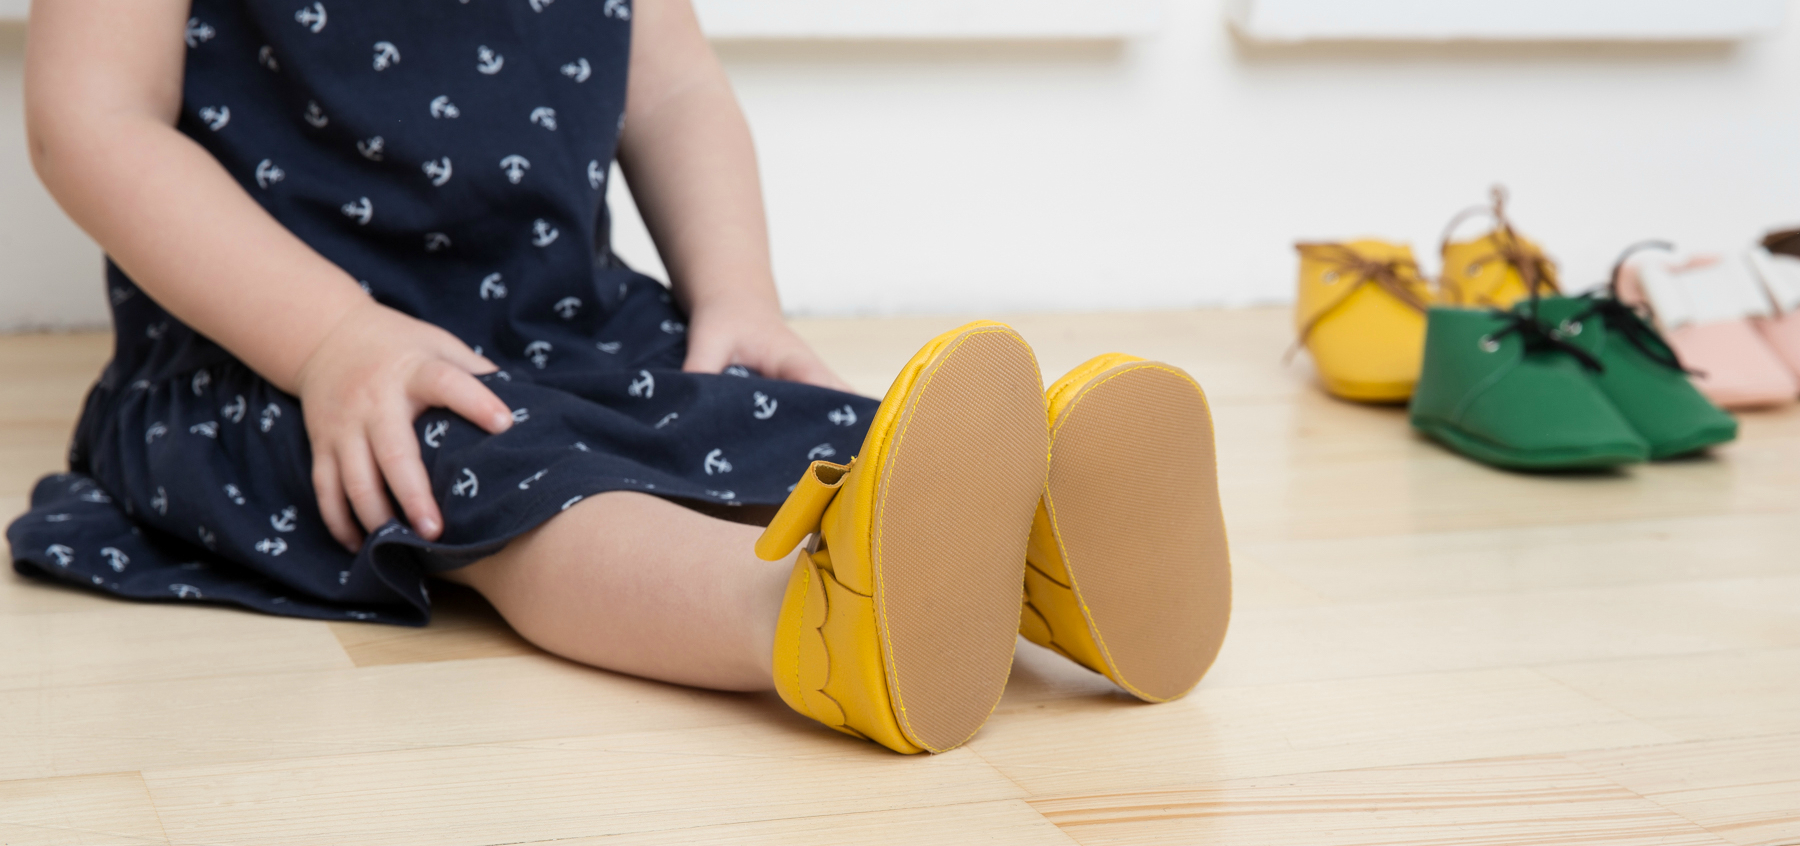 Правила по выбору детской обуви: главные особенности, рекомендации и достоинства для правильного ношения обуви детям